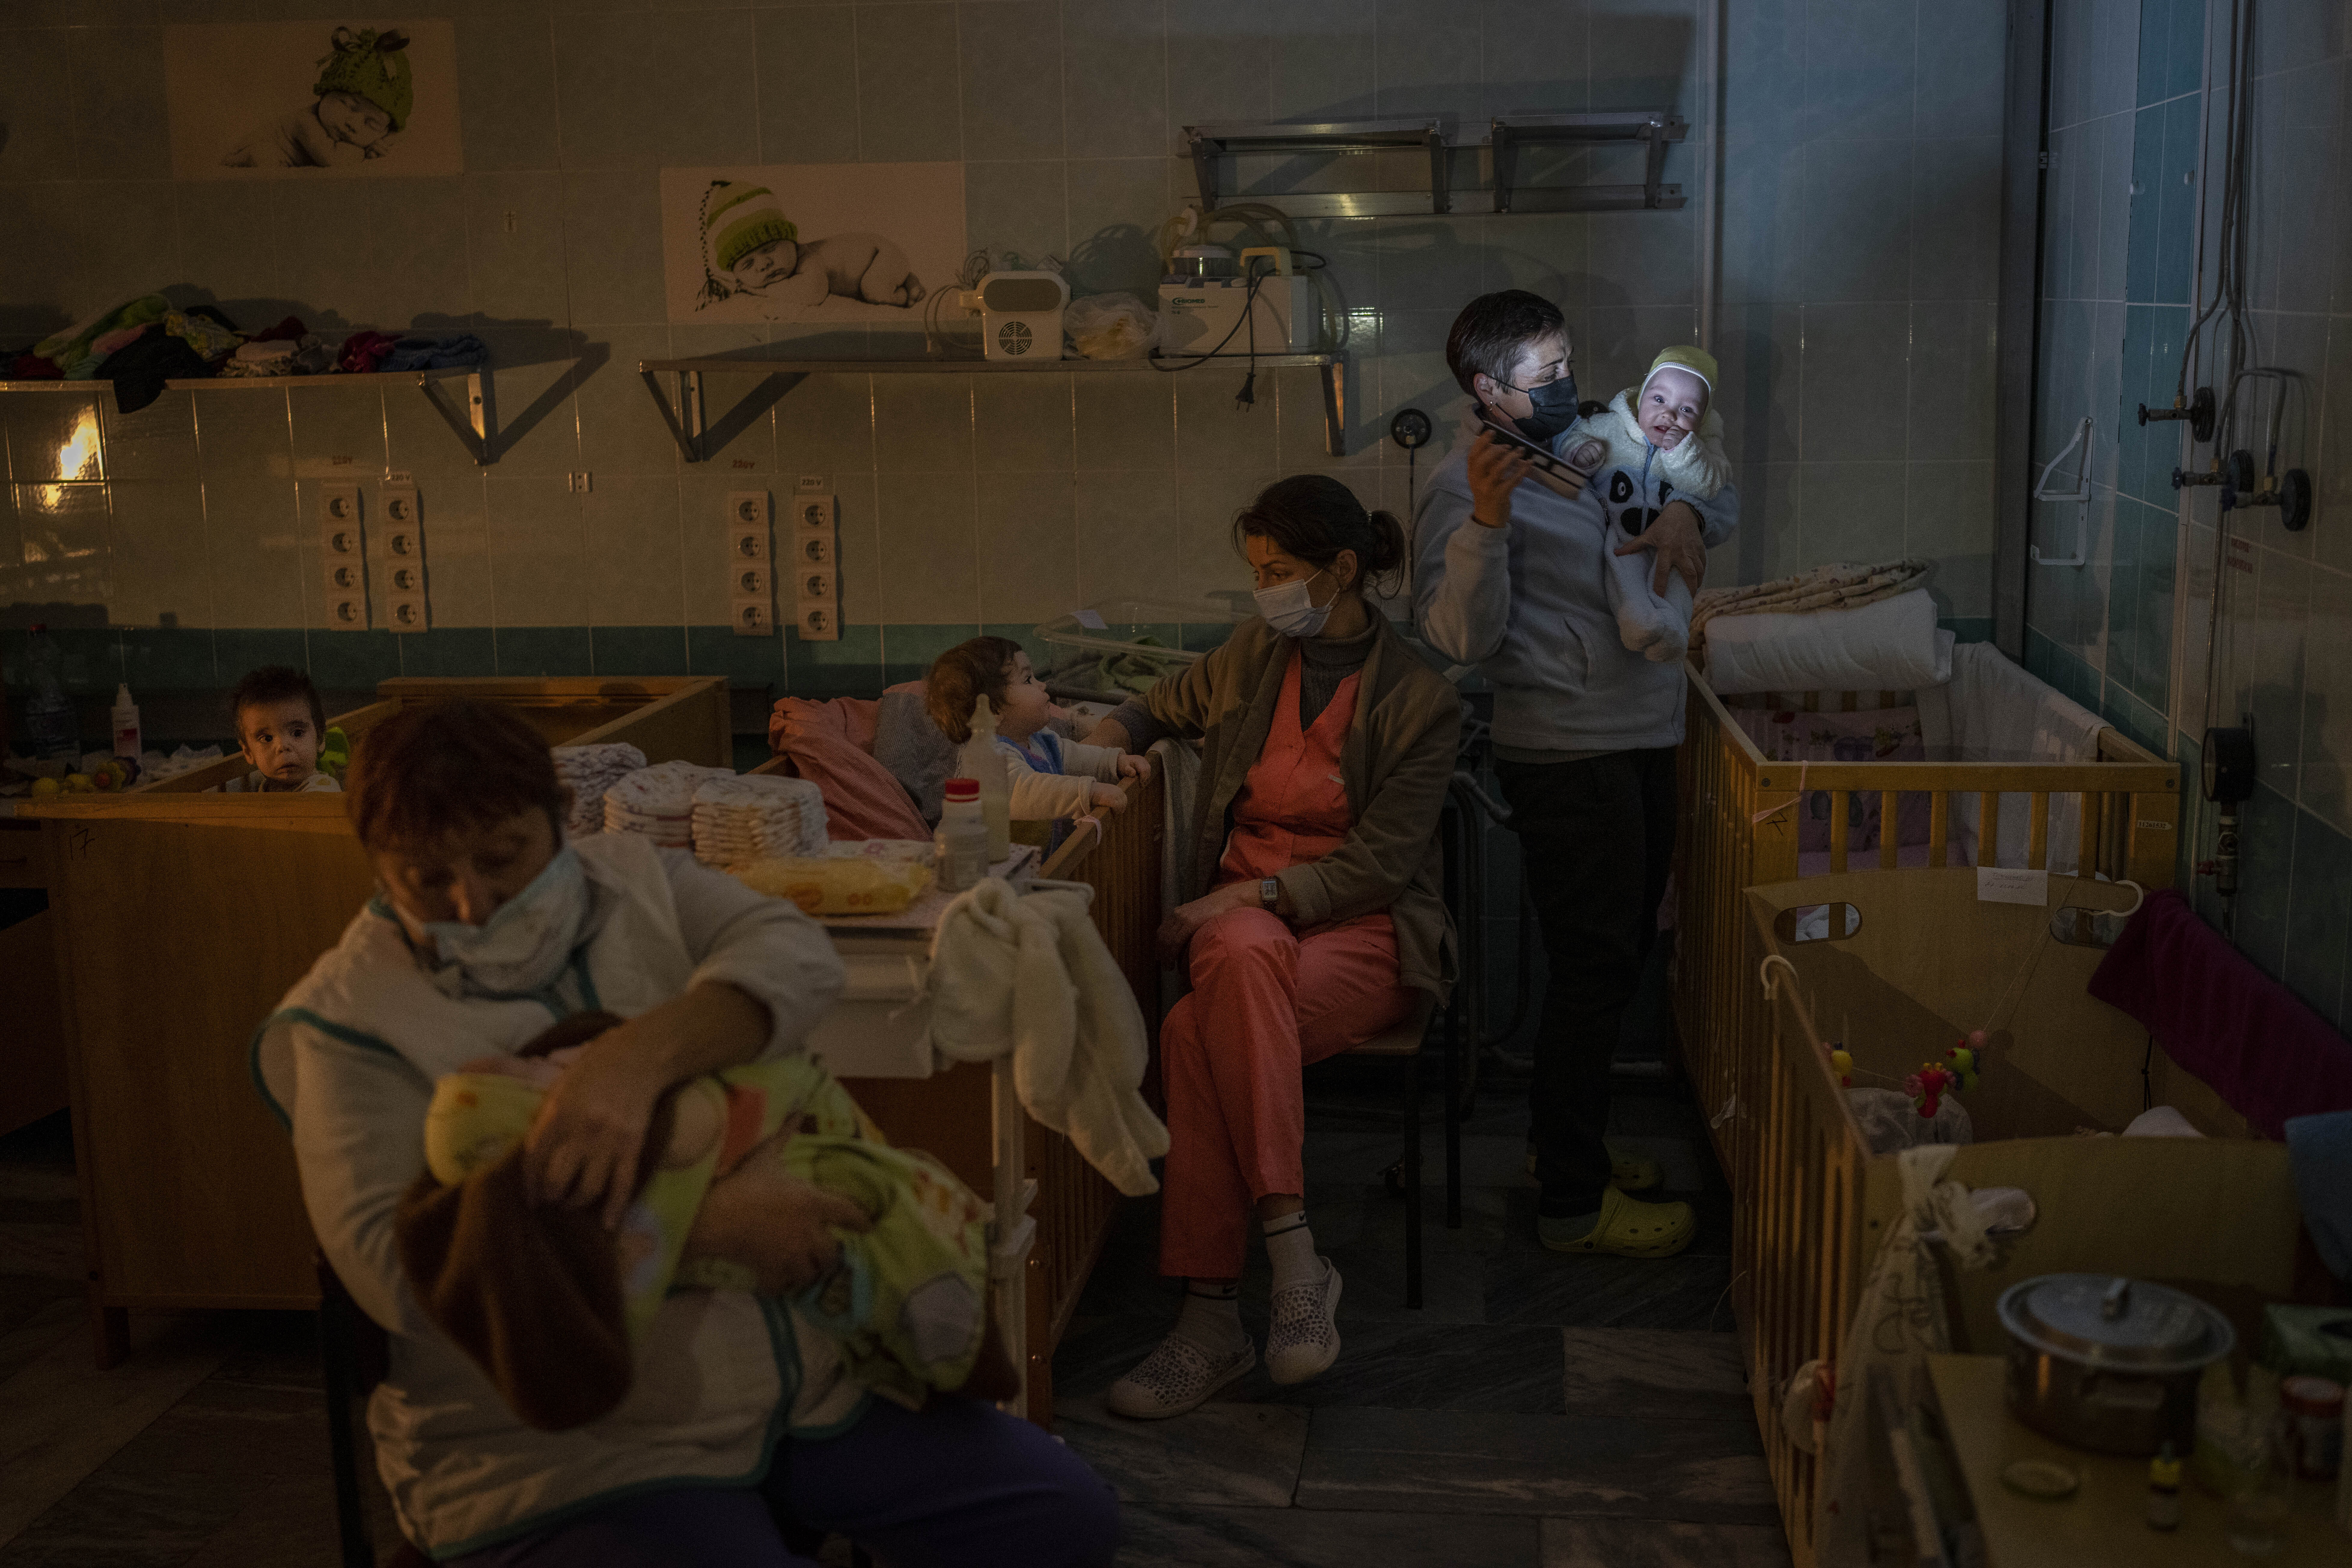 Personal hospitalario atiende a niños huérfanos en la sala de maternidad de un hospital regional ucraniano, el martes 22 de noviembre de 2022. AP/Bernat Armangue/Archivo